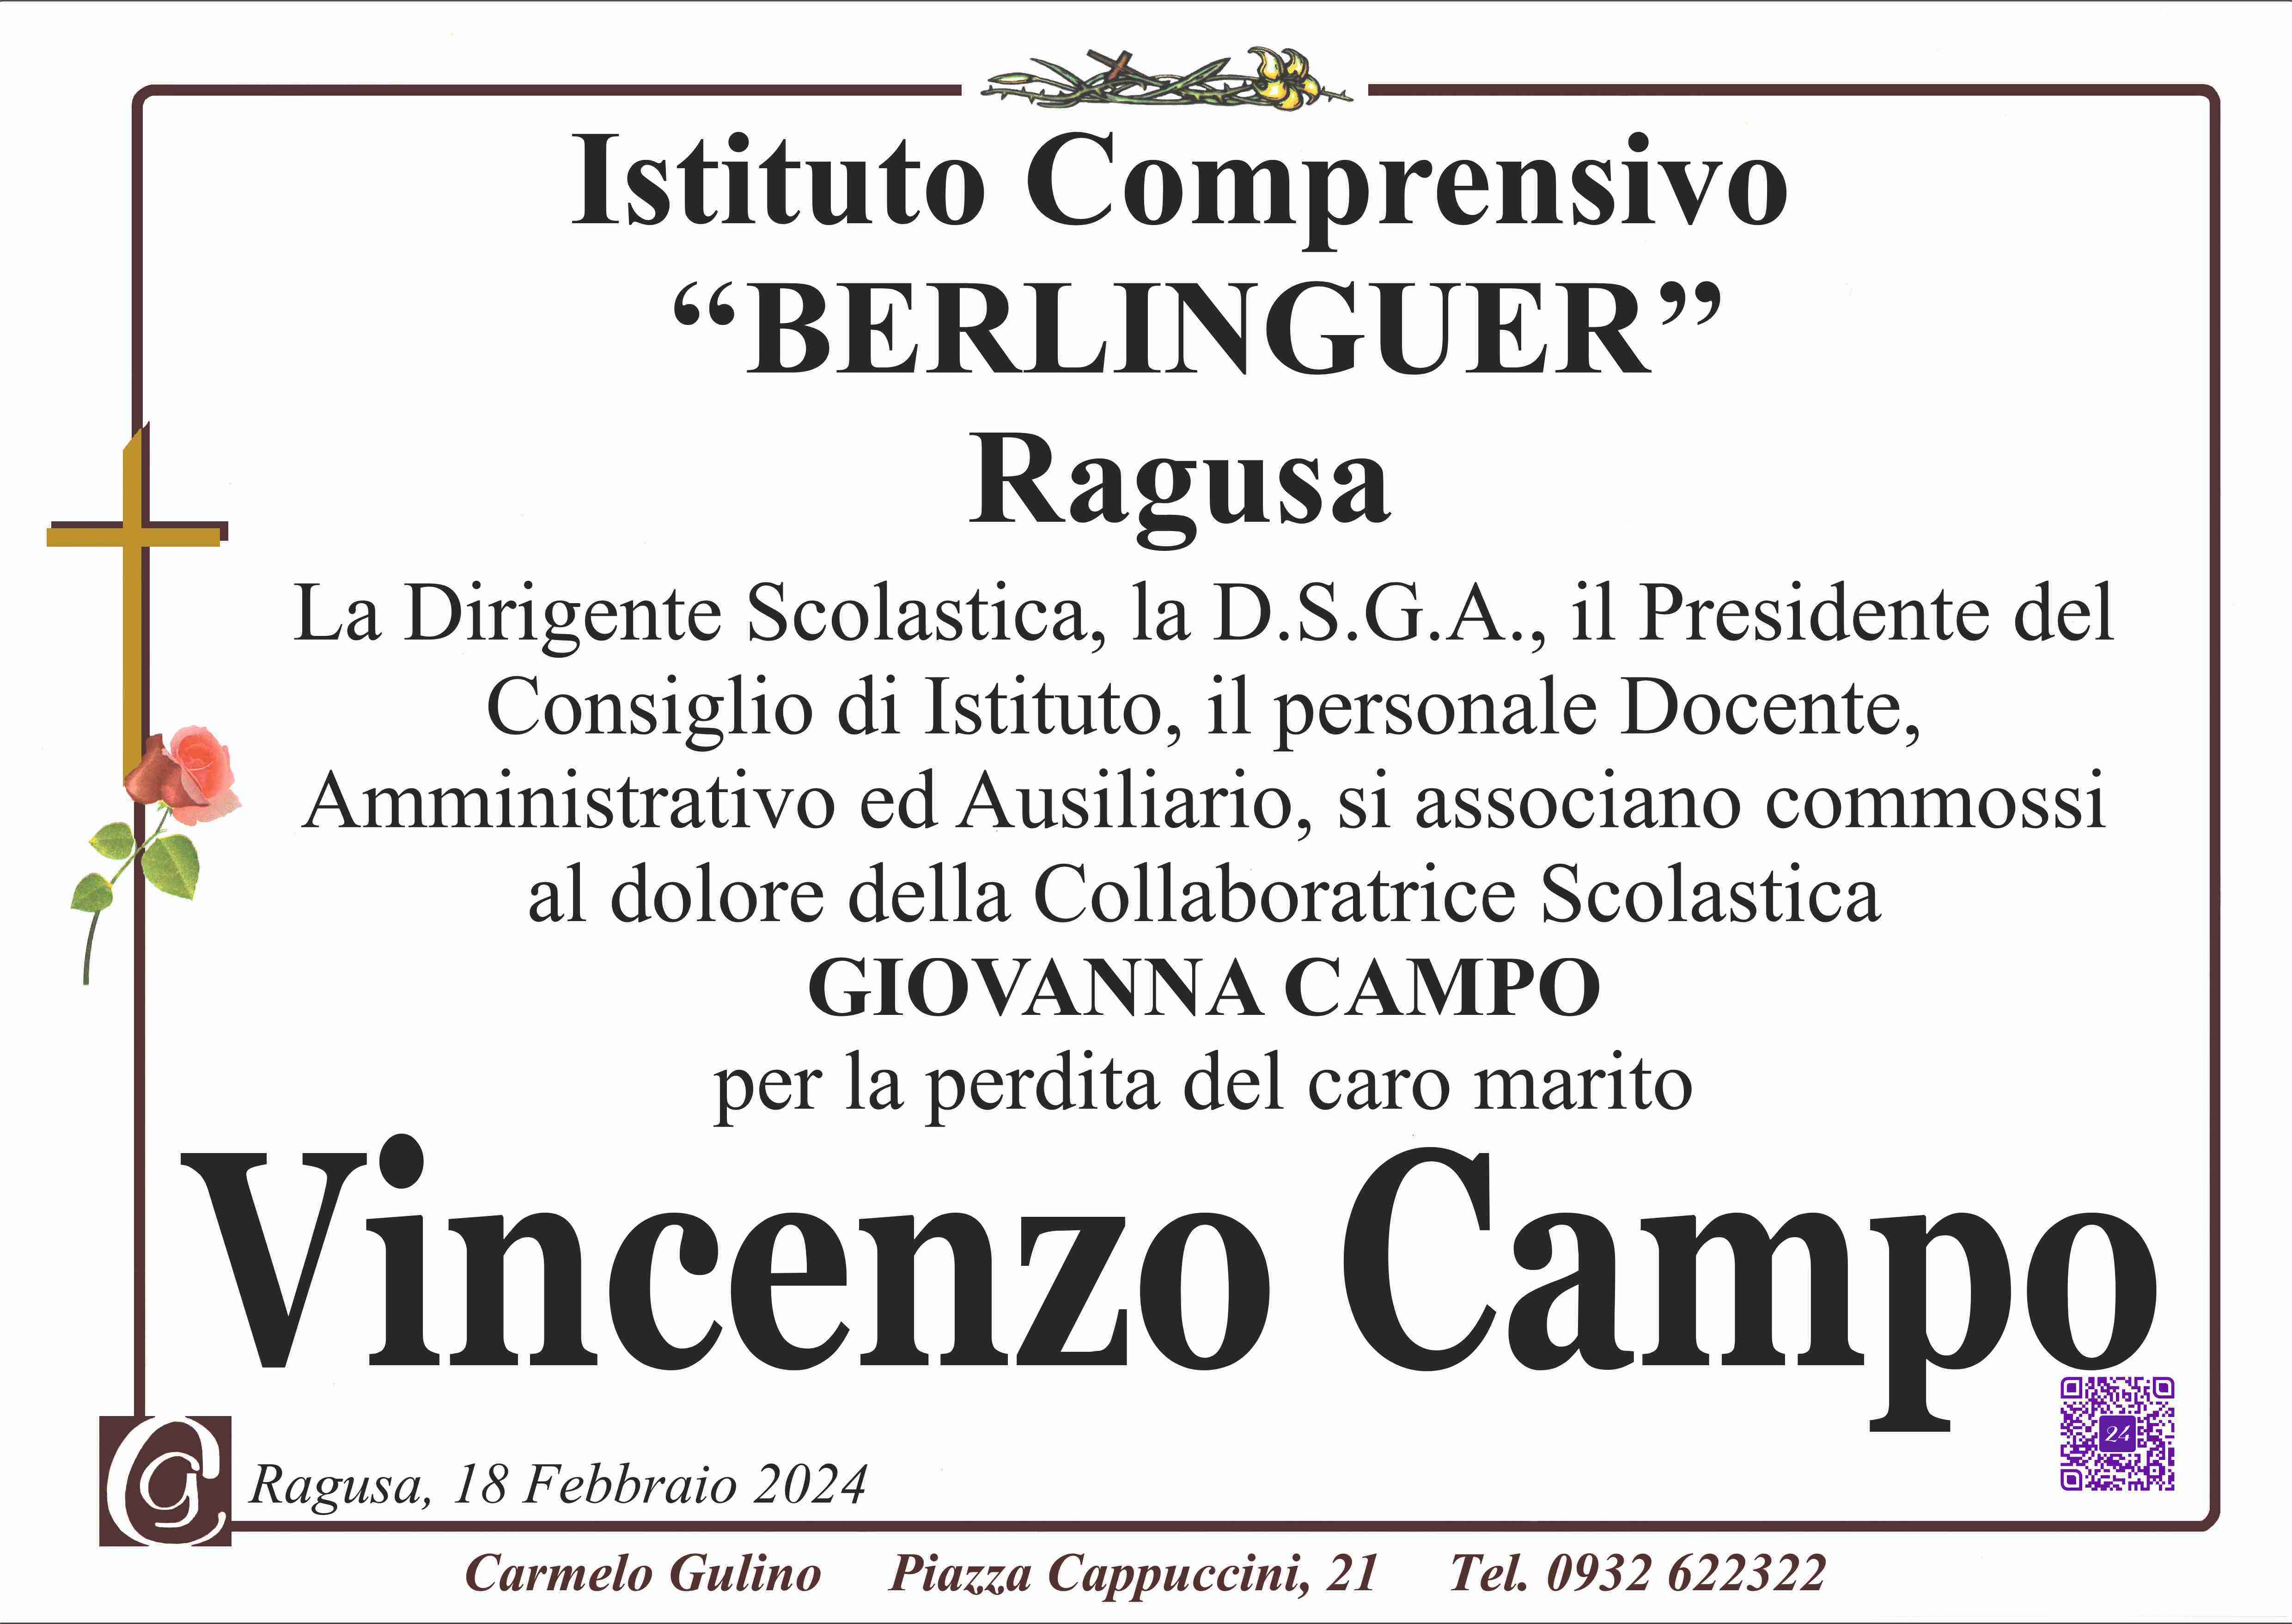 Vincenzo Campo